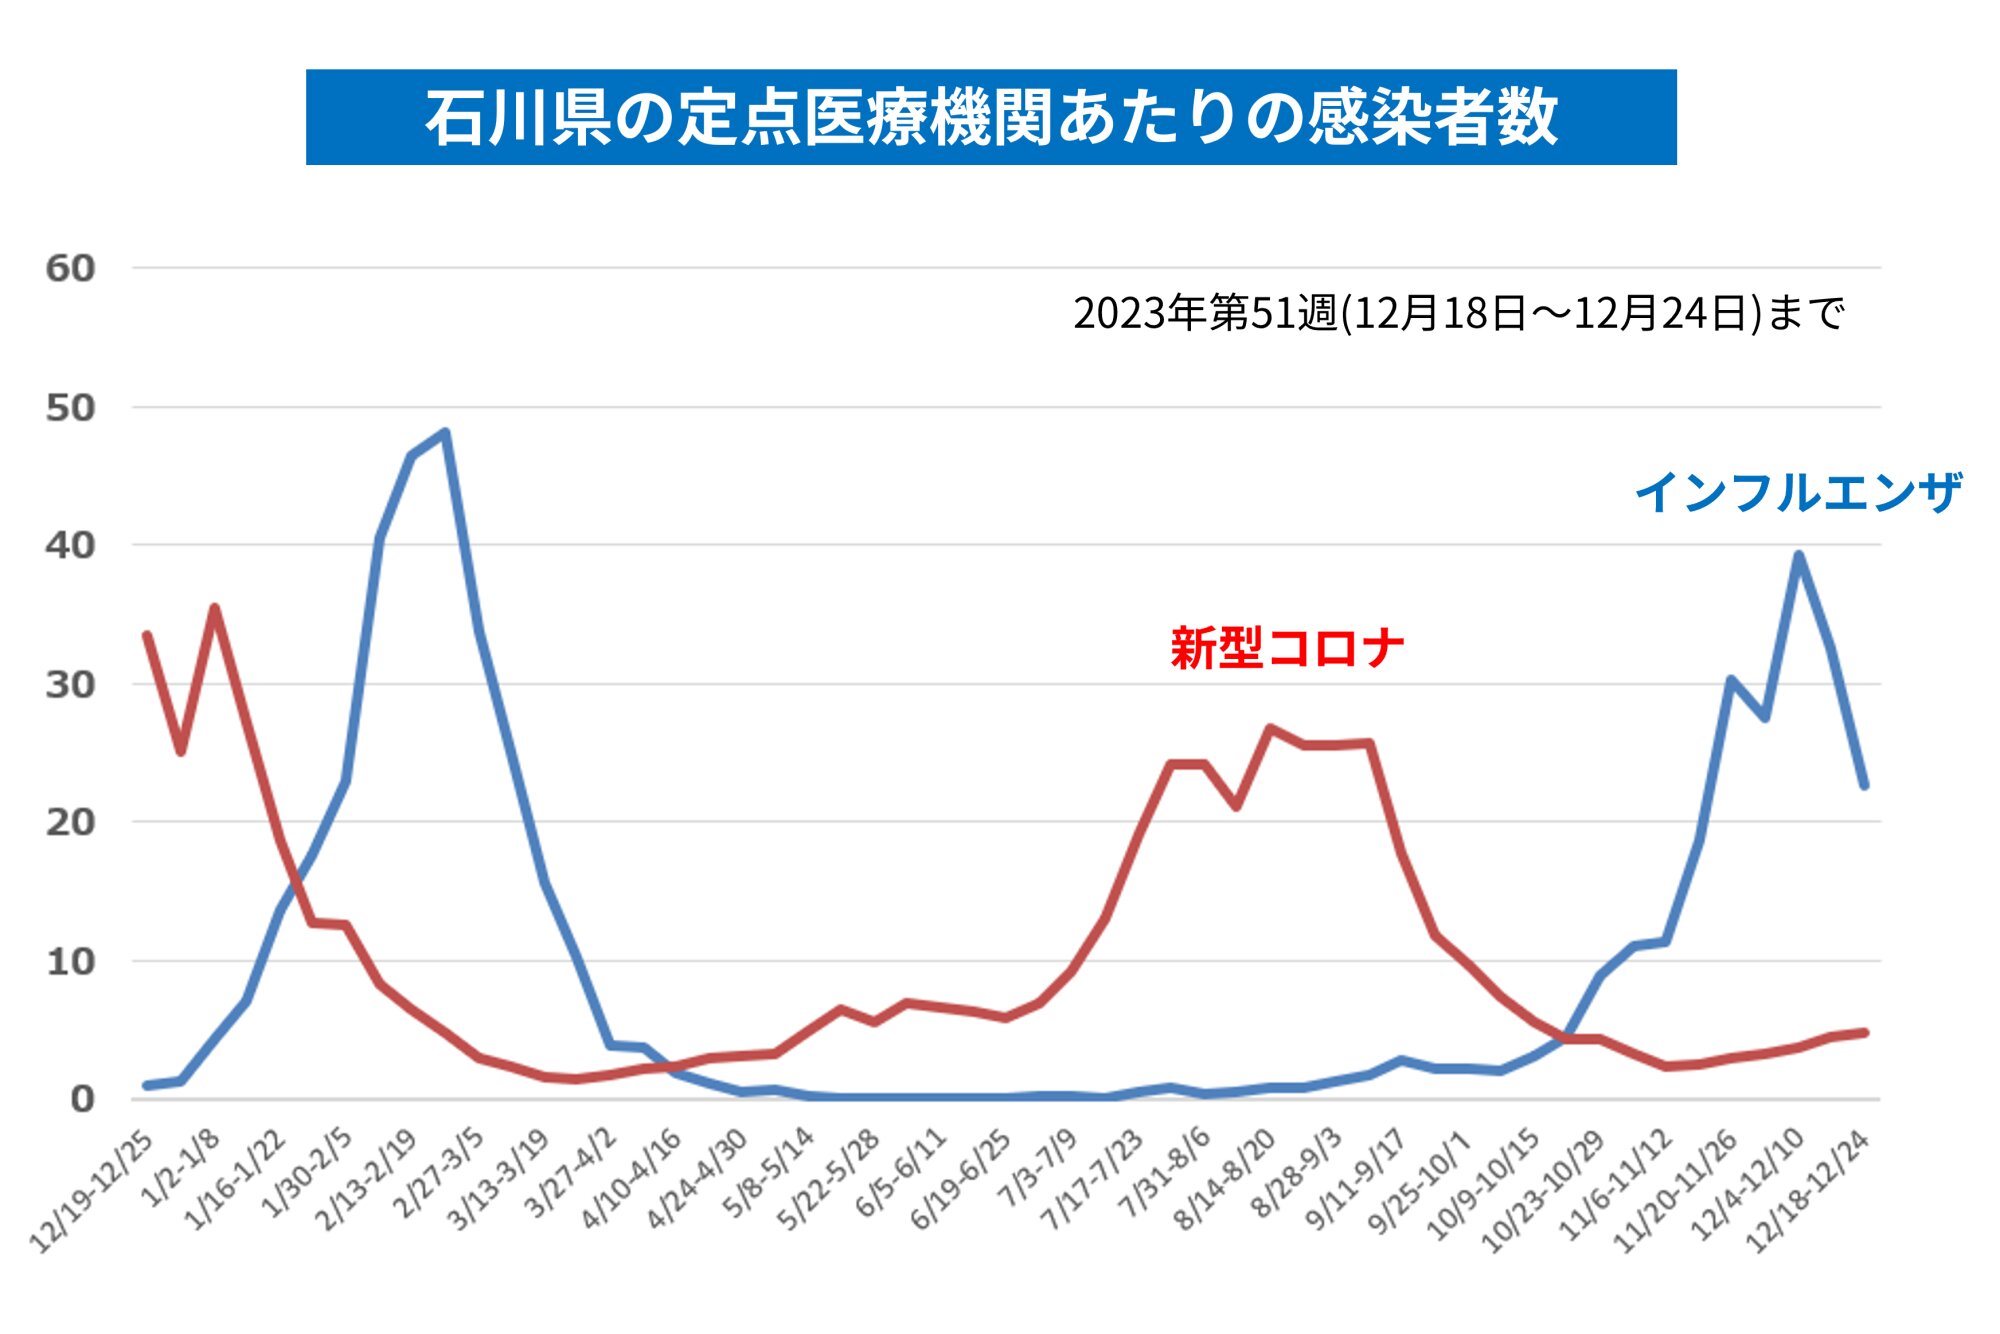 図１. 石川県の定点医療機関あたりのインフルエンザおよび新型コロナの患者数（参考資料１、２をもとに筆者作成）